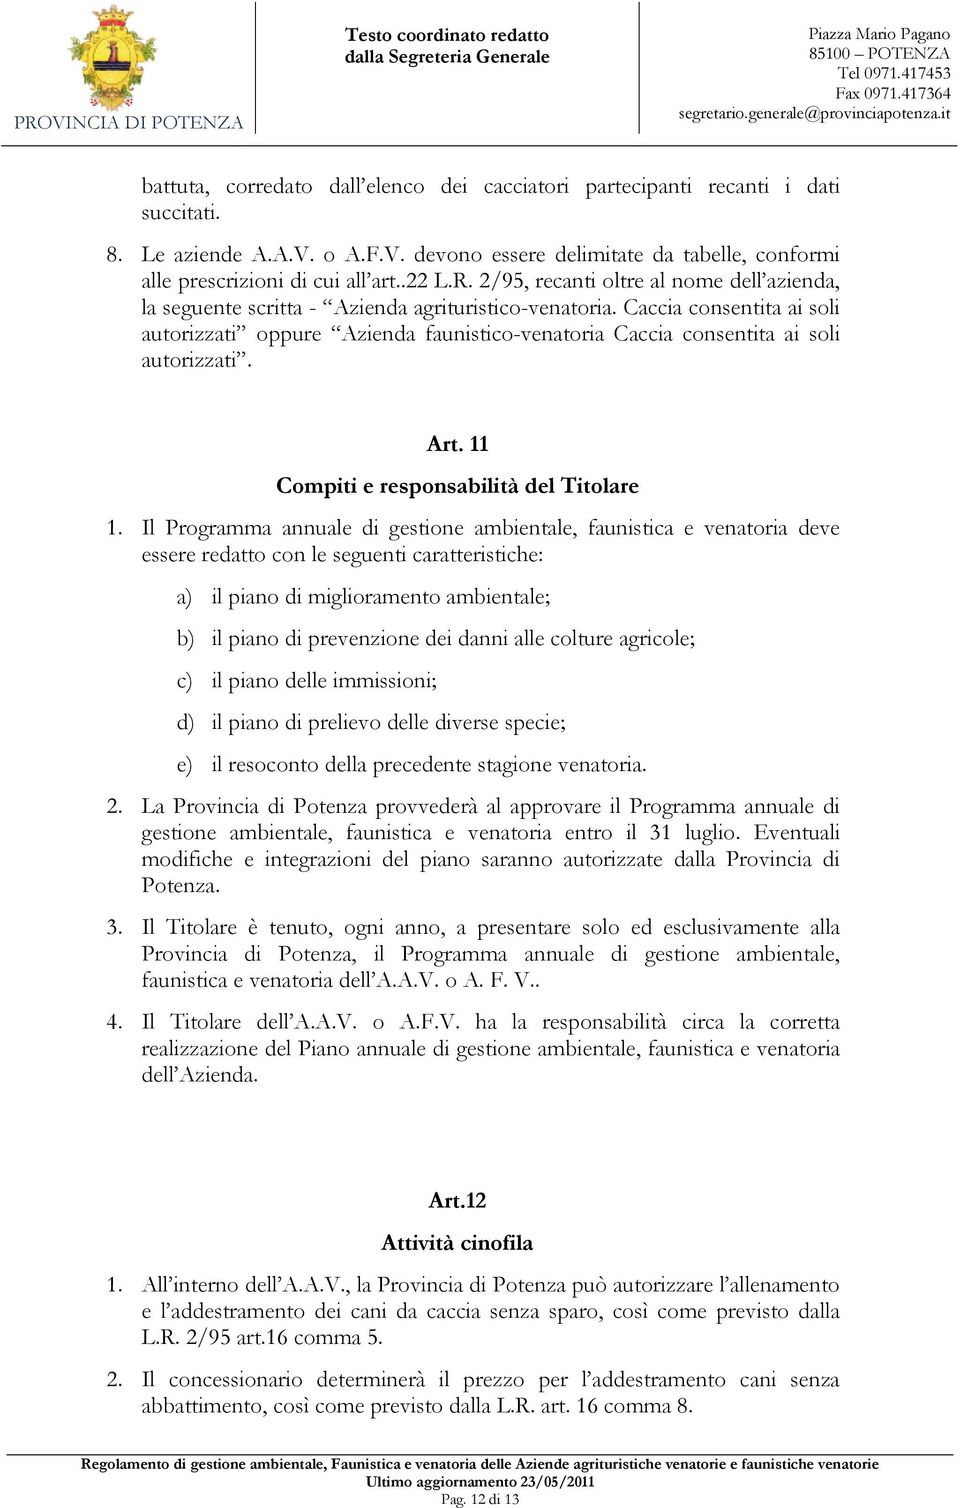 Caccia consentita ai soli autorizzati oppure Azienda faunistico-venatoria Caccia consentita ai soli autorizzati. Art. 11 Compiti e responsabilità del Titolare 1.